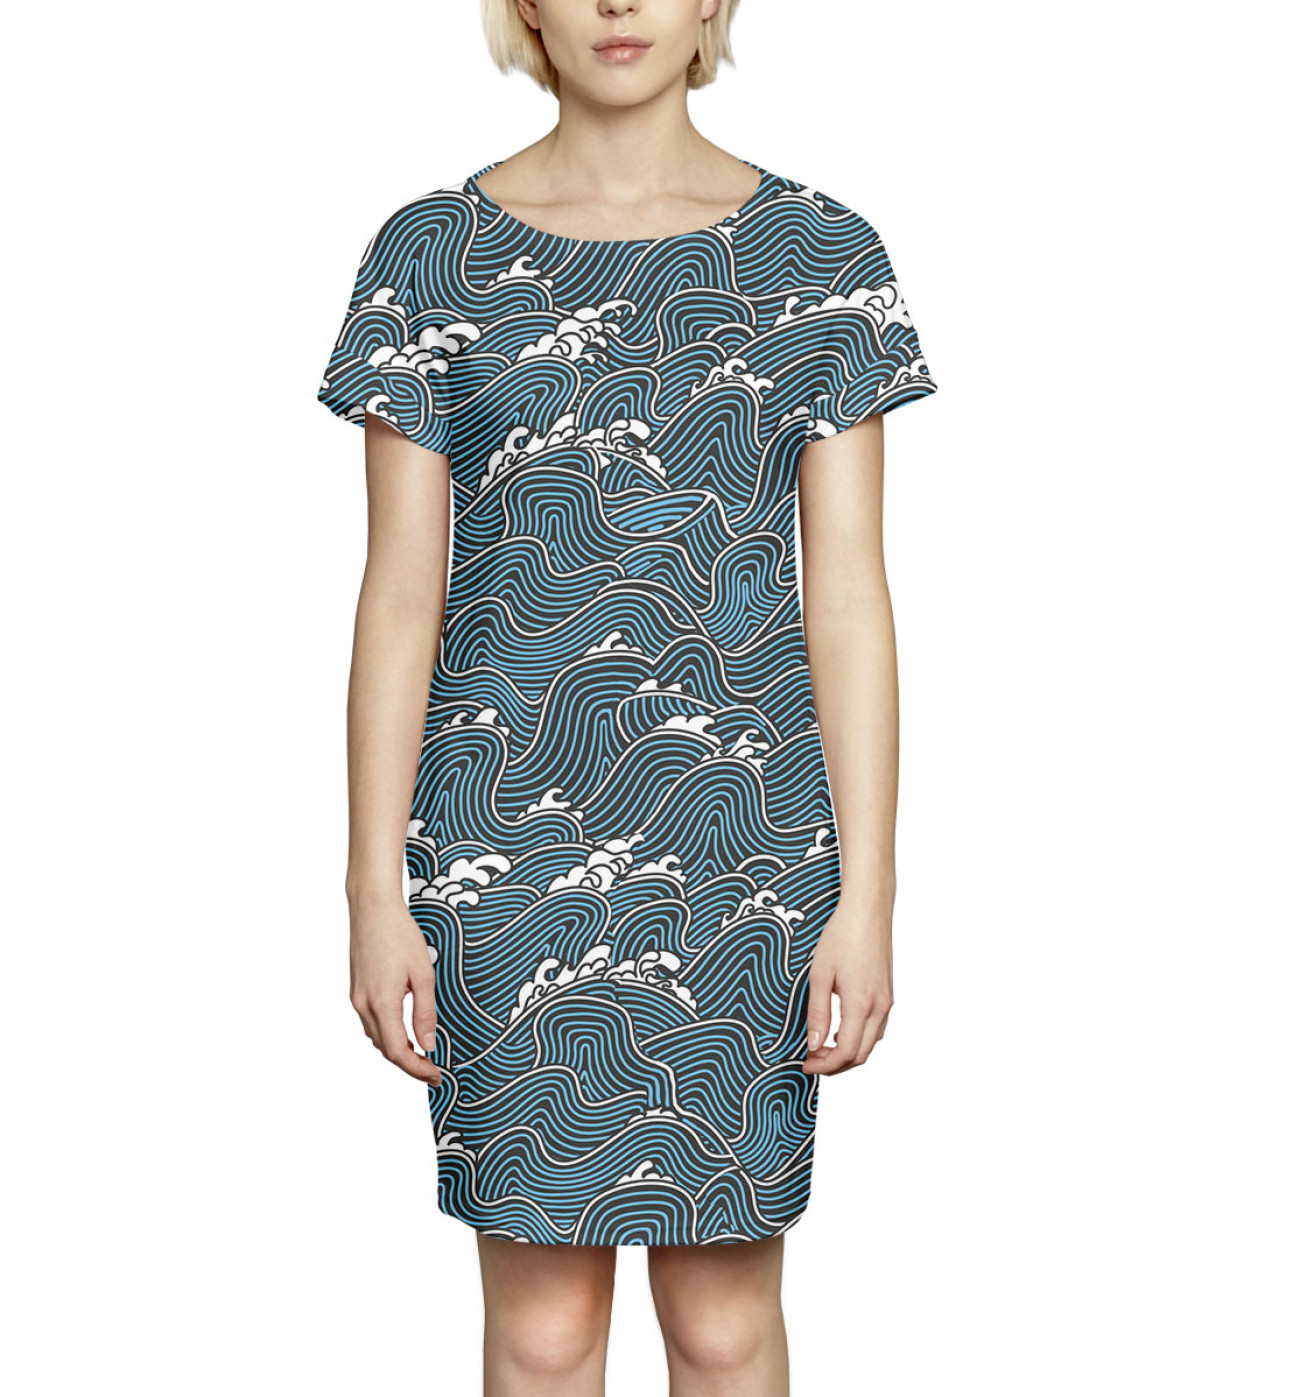 Женское Платье летнее Волны, артикул: NWT-306064-pkr-1